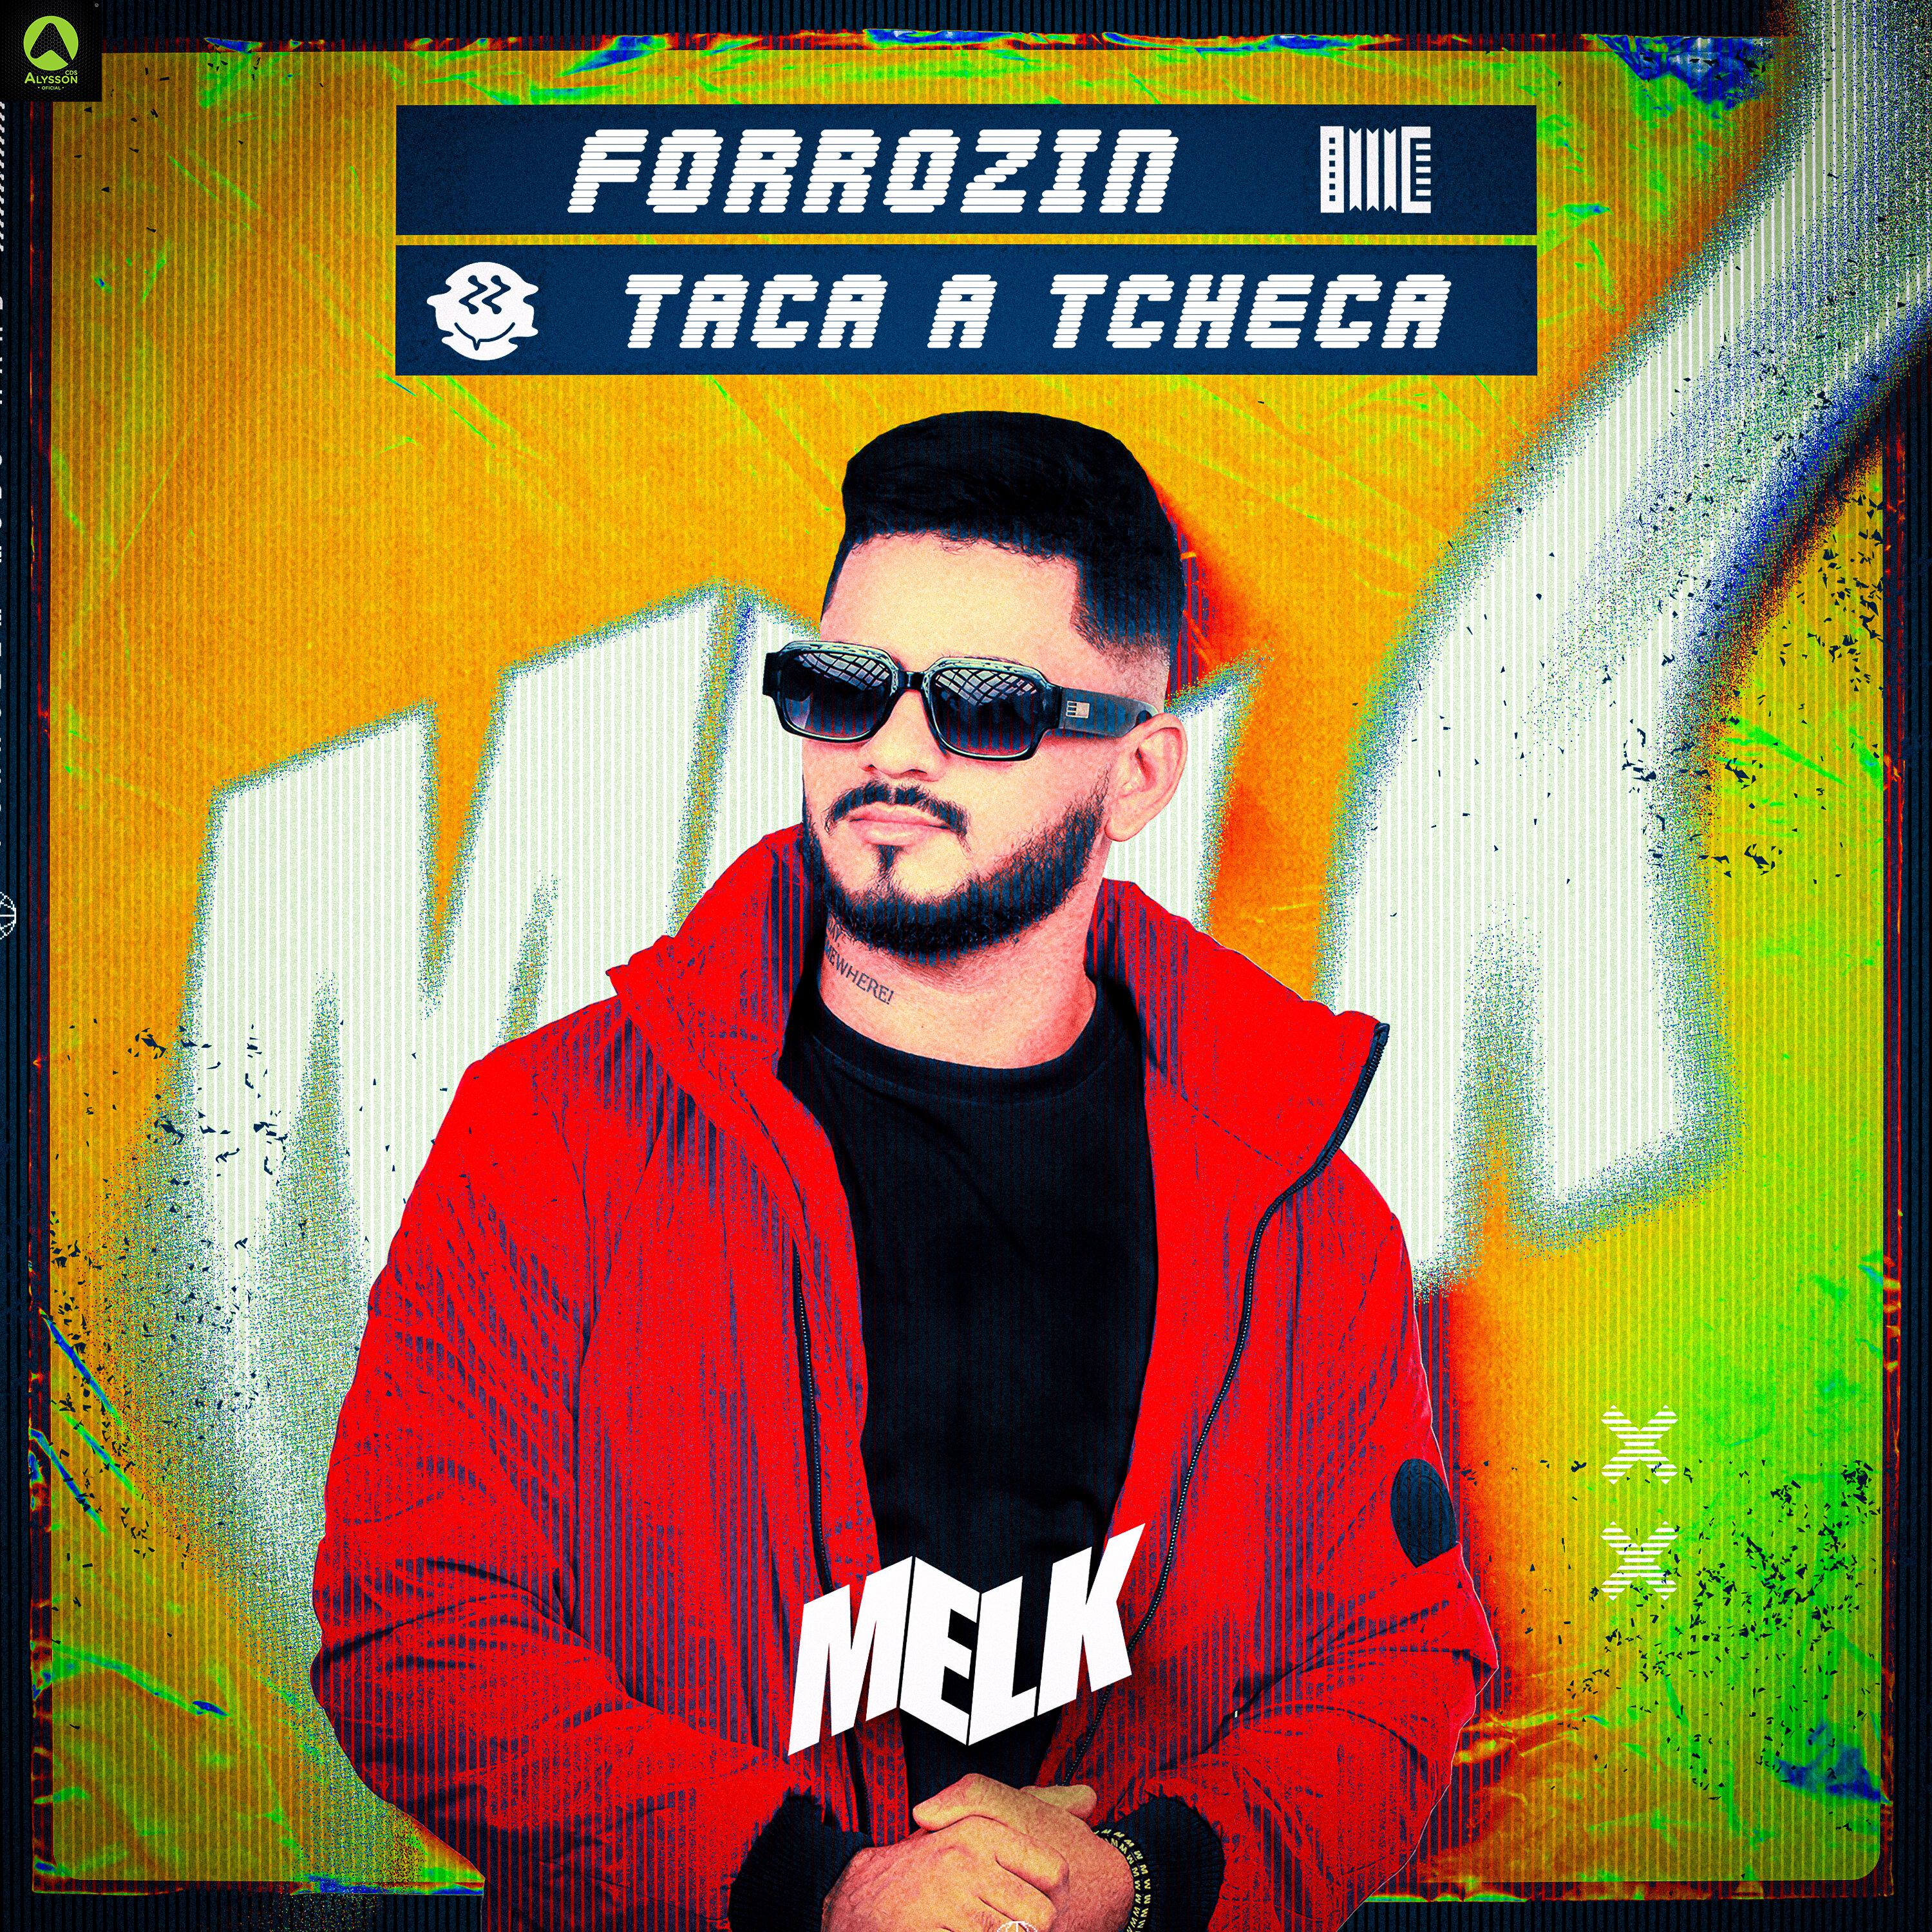 djmelk - Forrózin Taca a Tcheca (feat. Mc Rd)